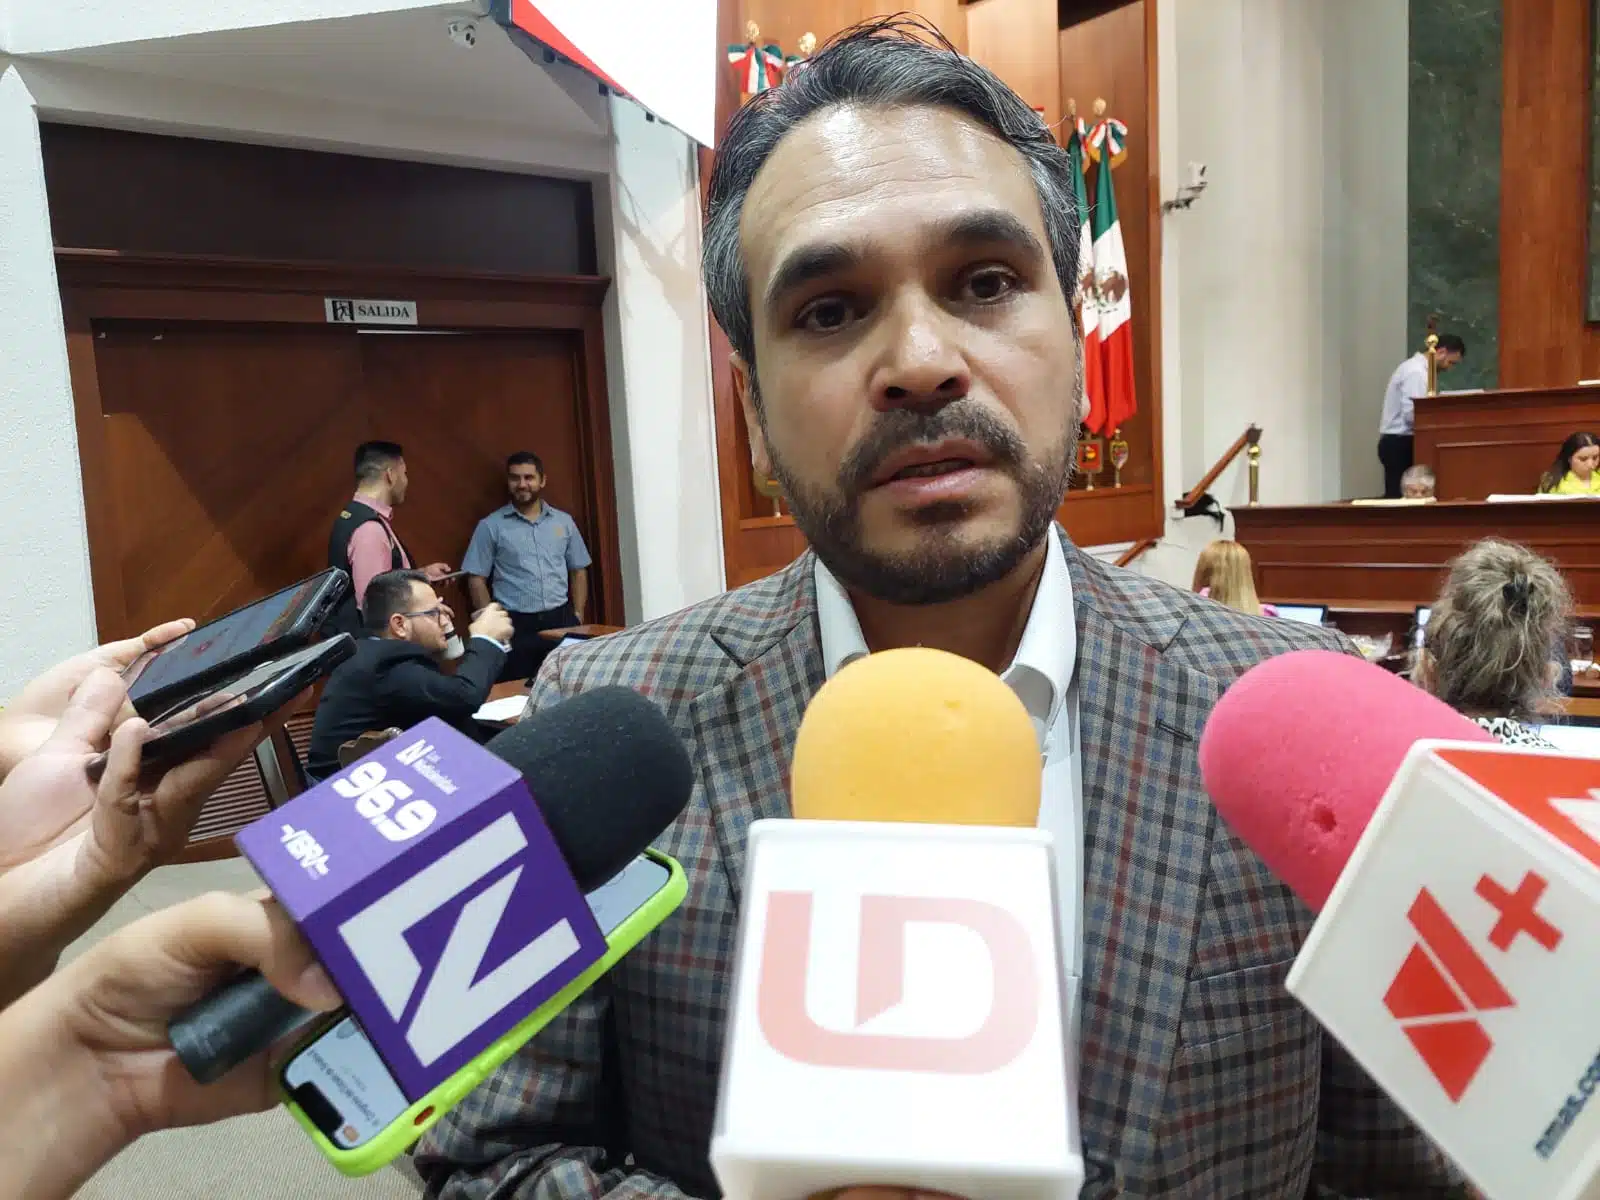 Sergio Mario Arredondo Salas, diputado local sin partido, en el Congreso del Estado en Culiacán en entrevista con los medios de comunicación